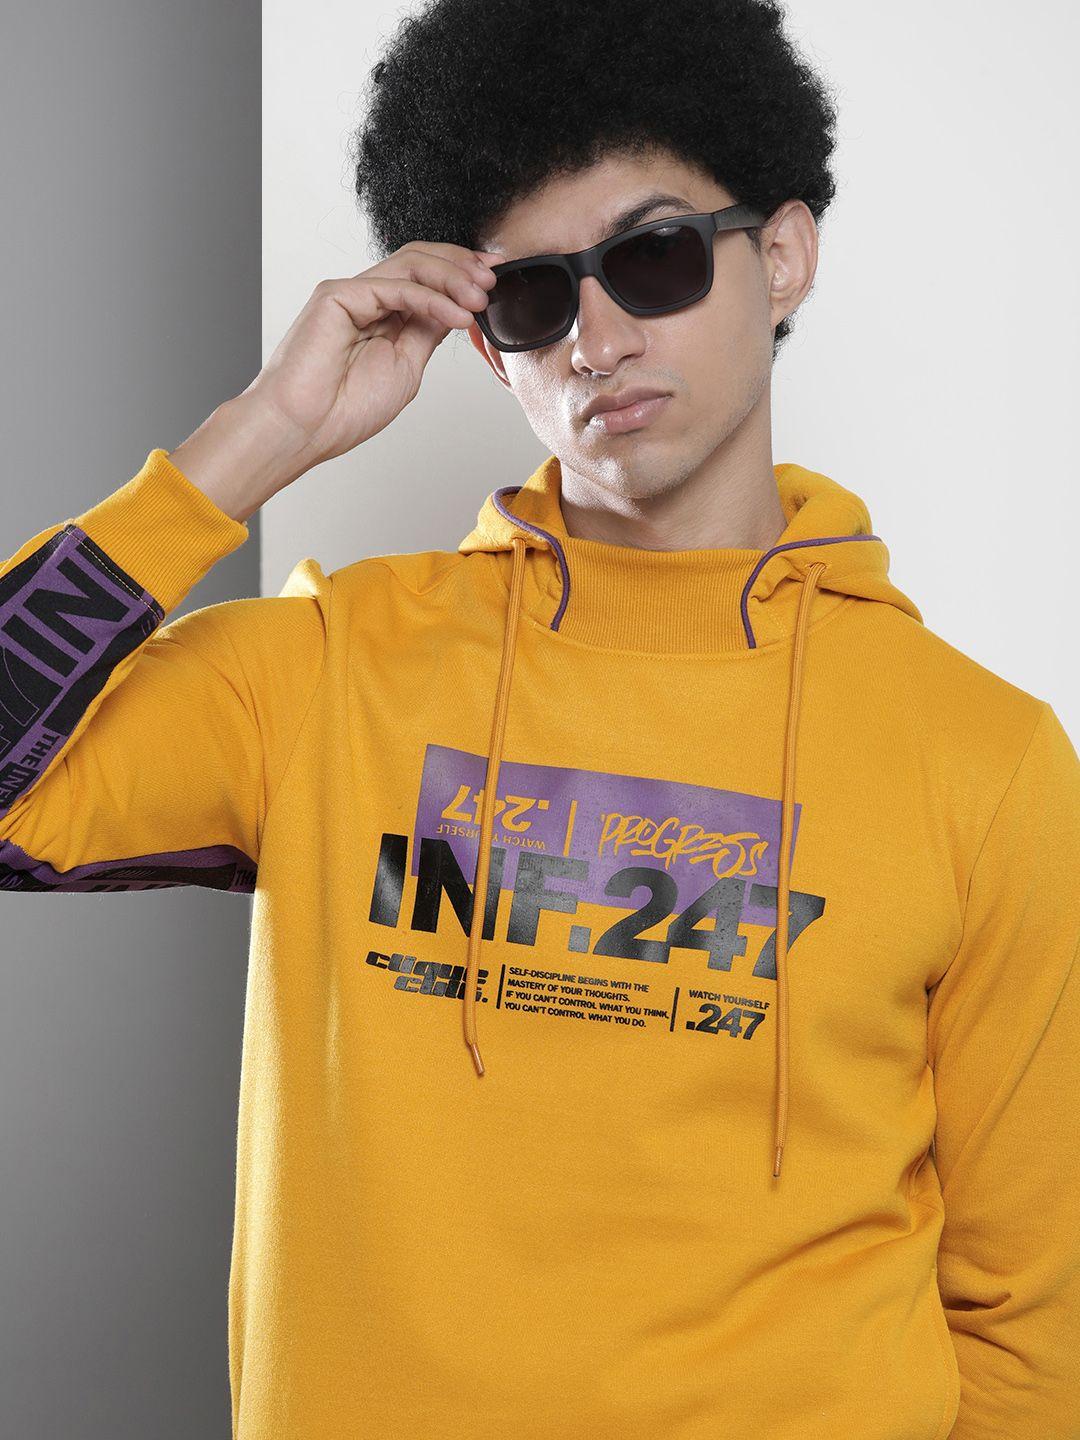 the-indian-garage-co-men-hooded-sweatshirt